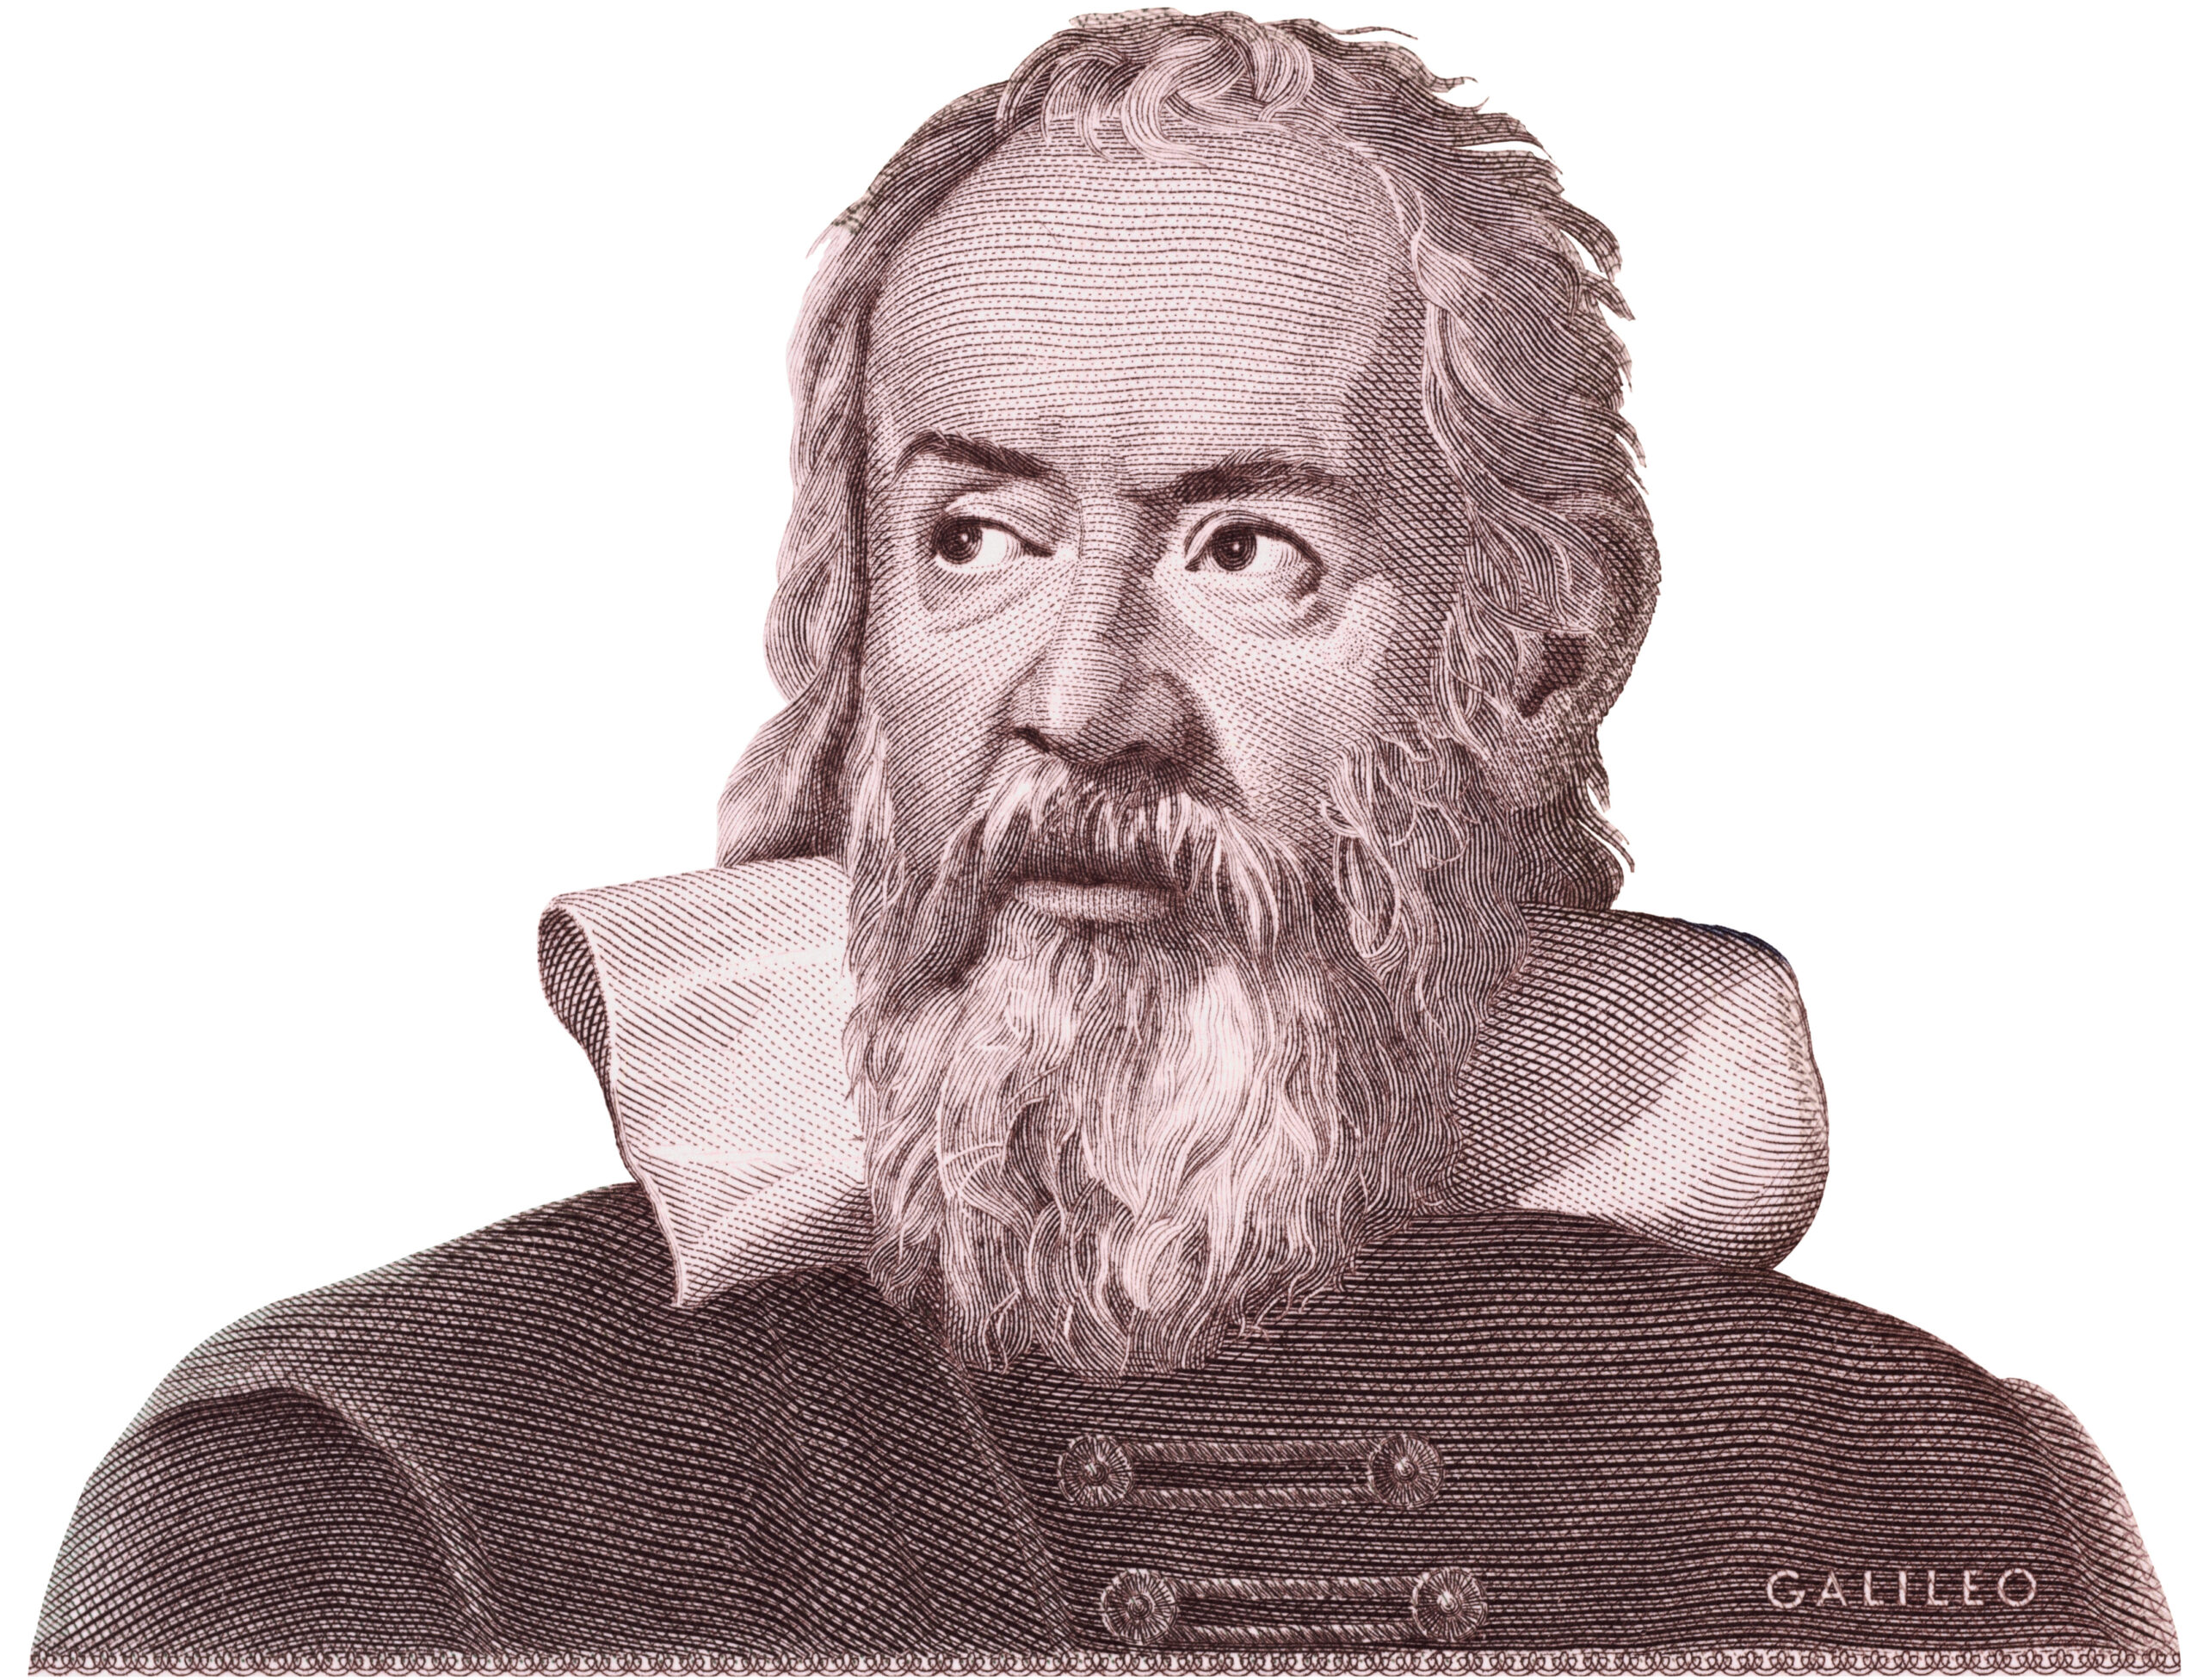 Le Giornate di Galileo | Pisa